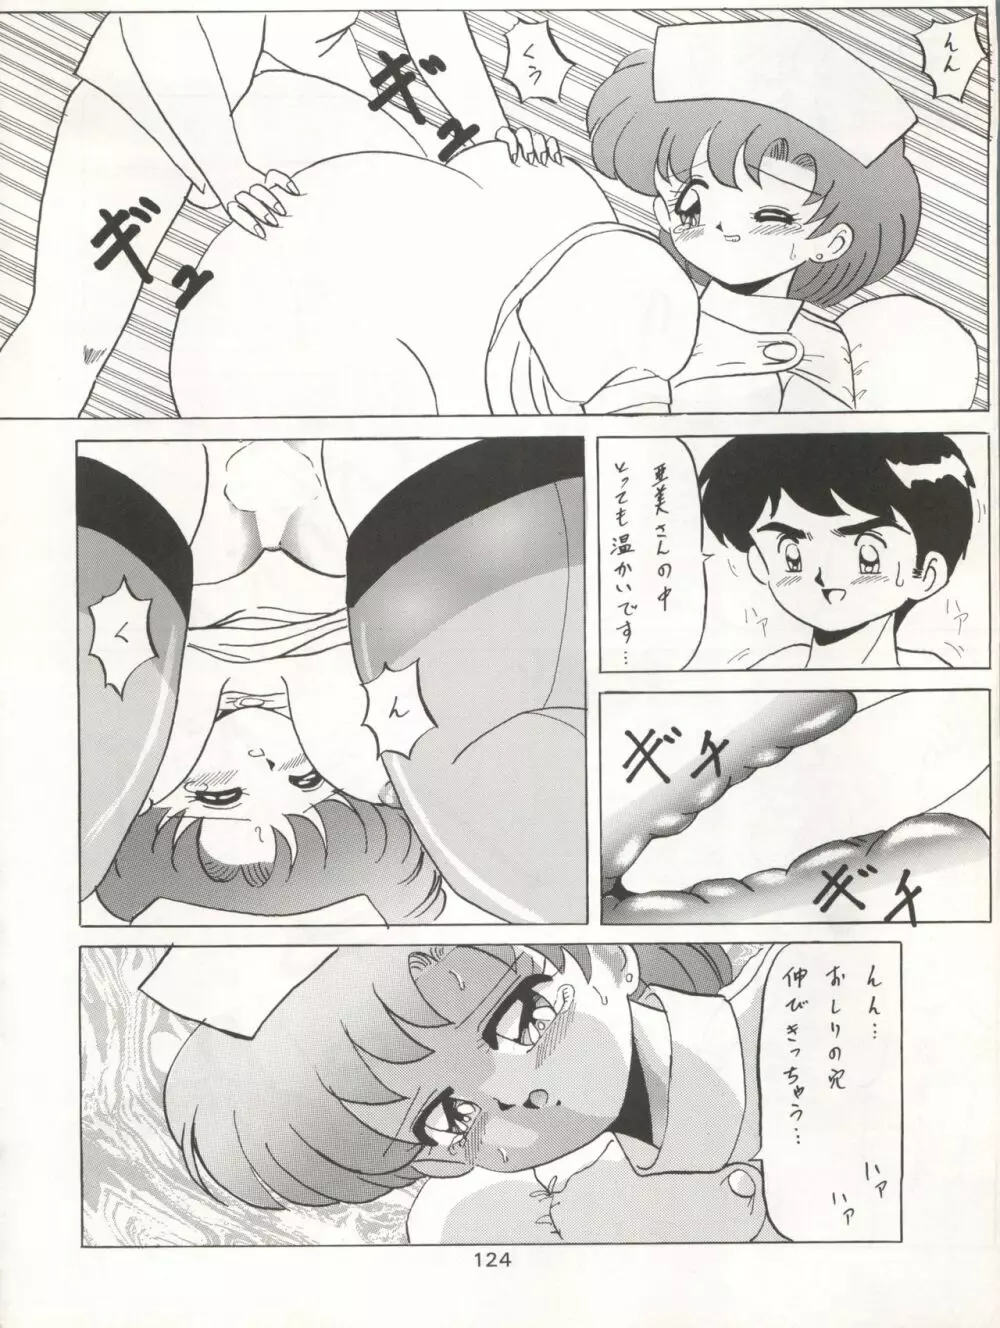 KATZE 7 上巻 - page125